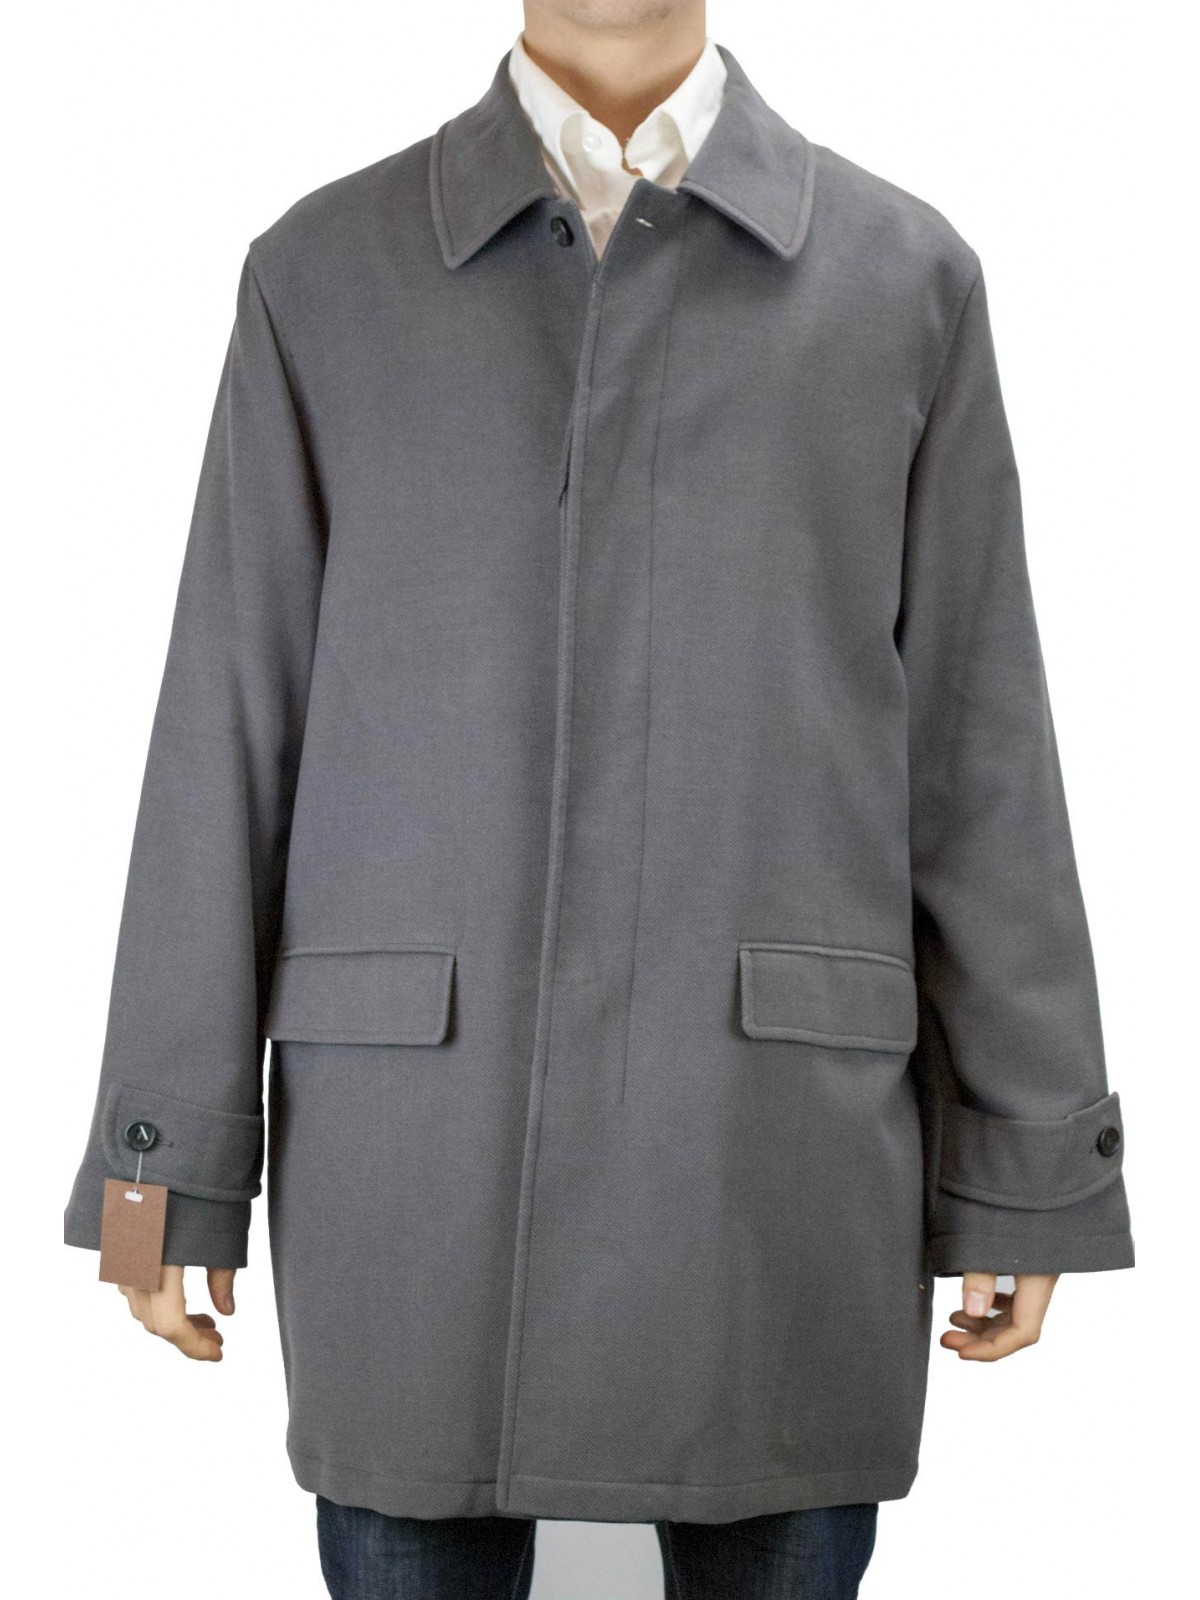 Veste longue pour homme 50 L Pardessus en velours martelé gris foncé - Costumes, blazers et vestes pour hommes